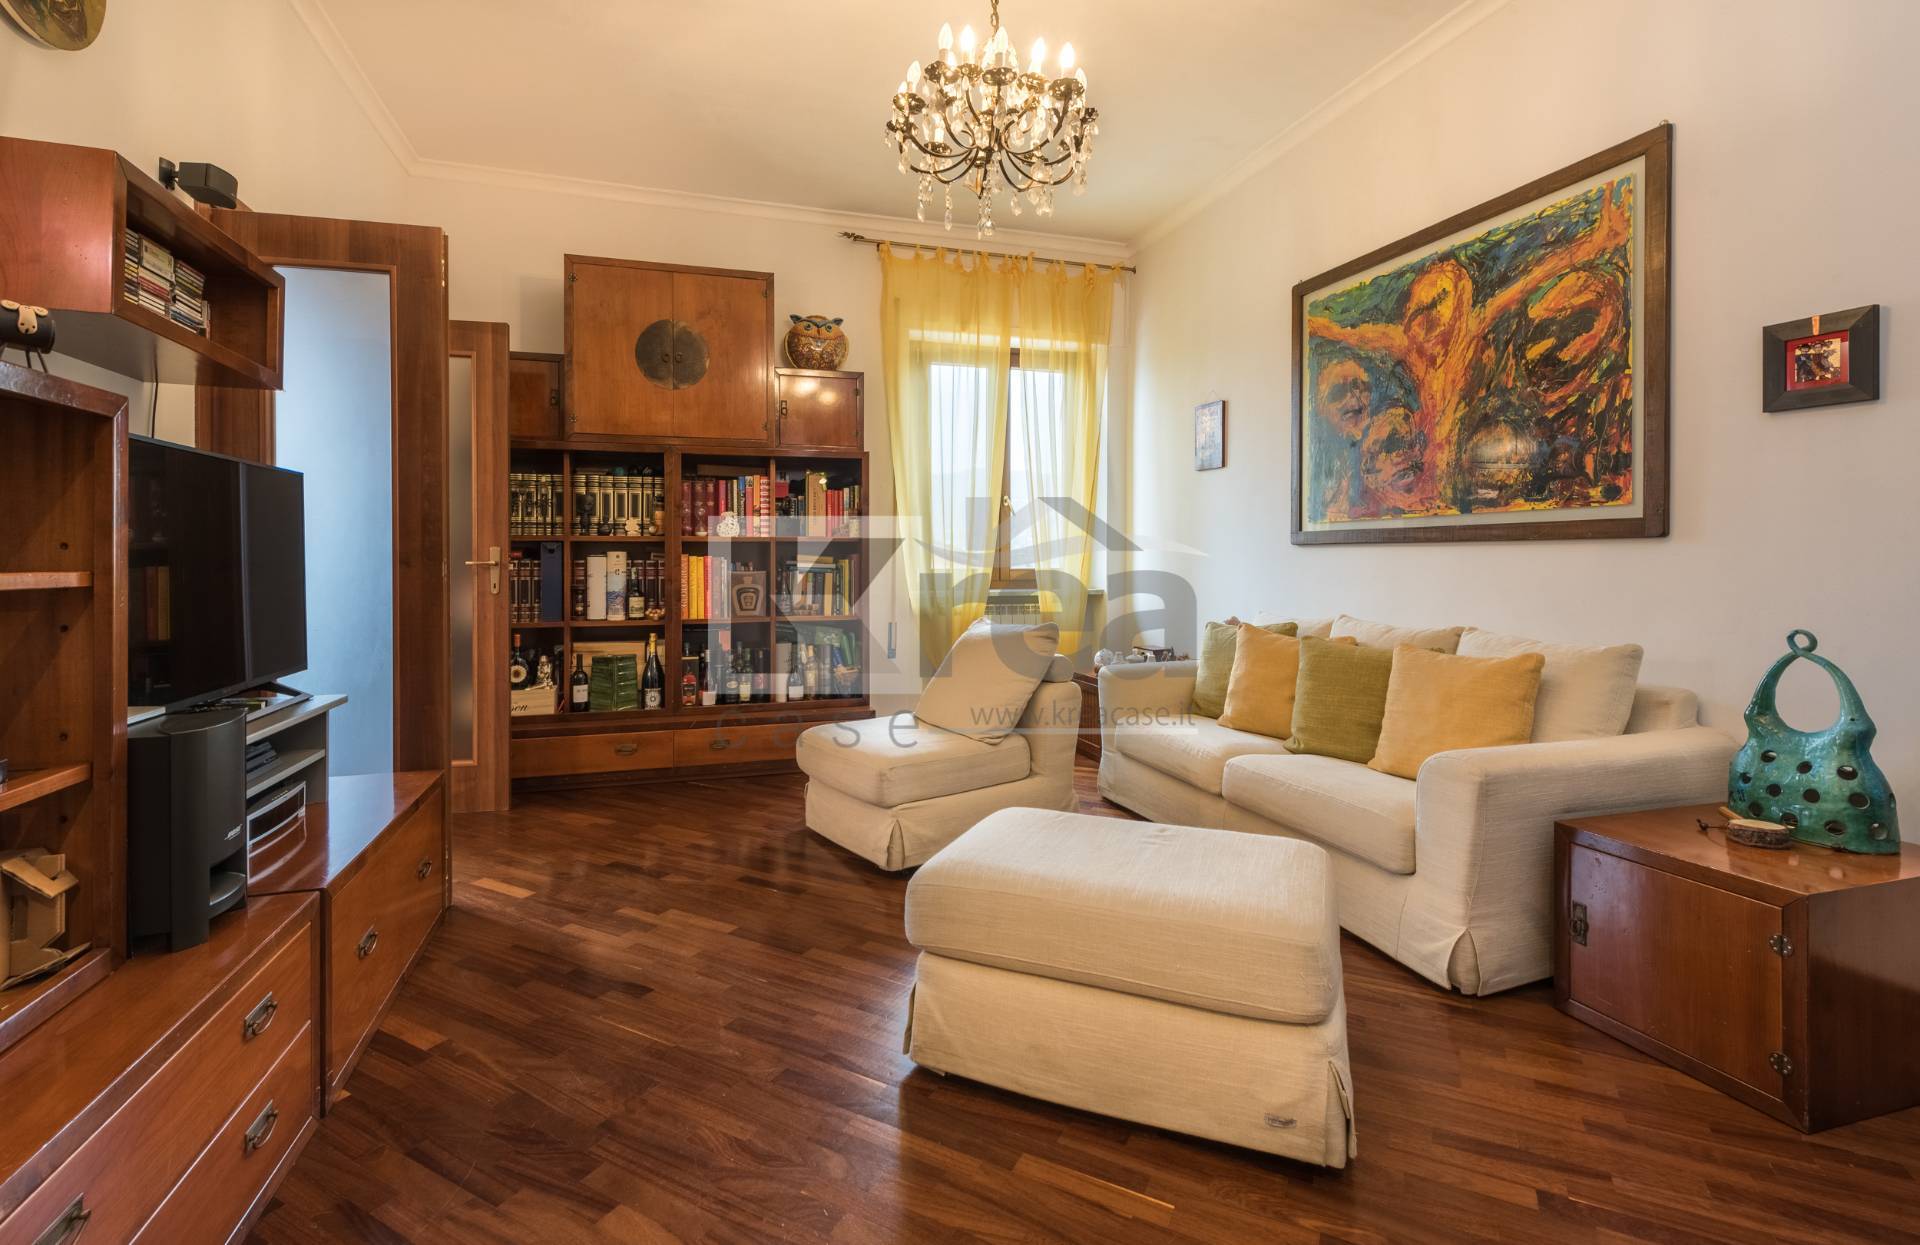 Appartamento in vendita a Colonna, 4 locali, prezzo € 139.000 | CambioCasa.it